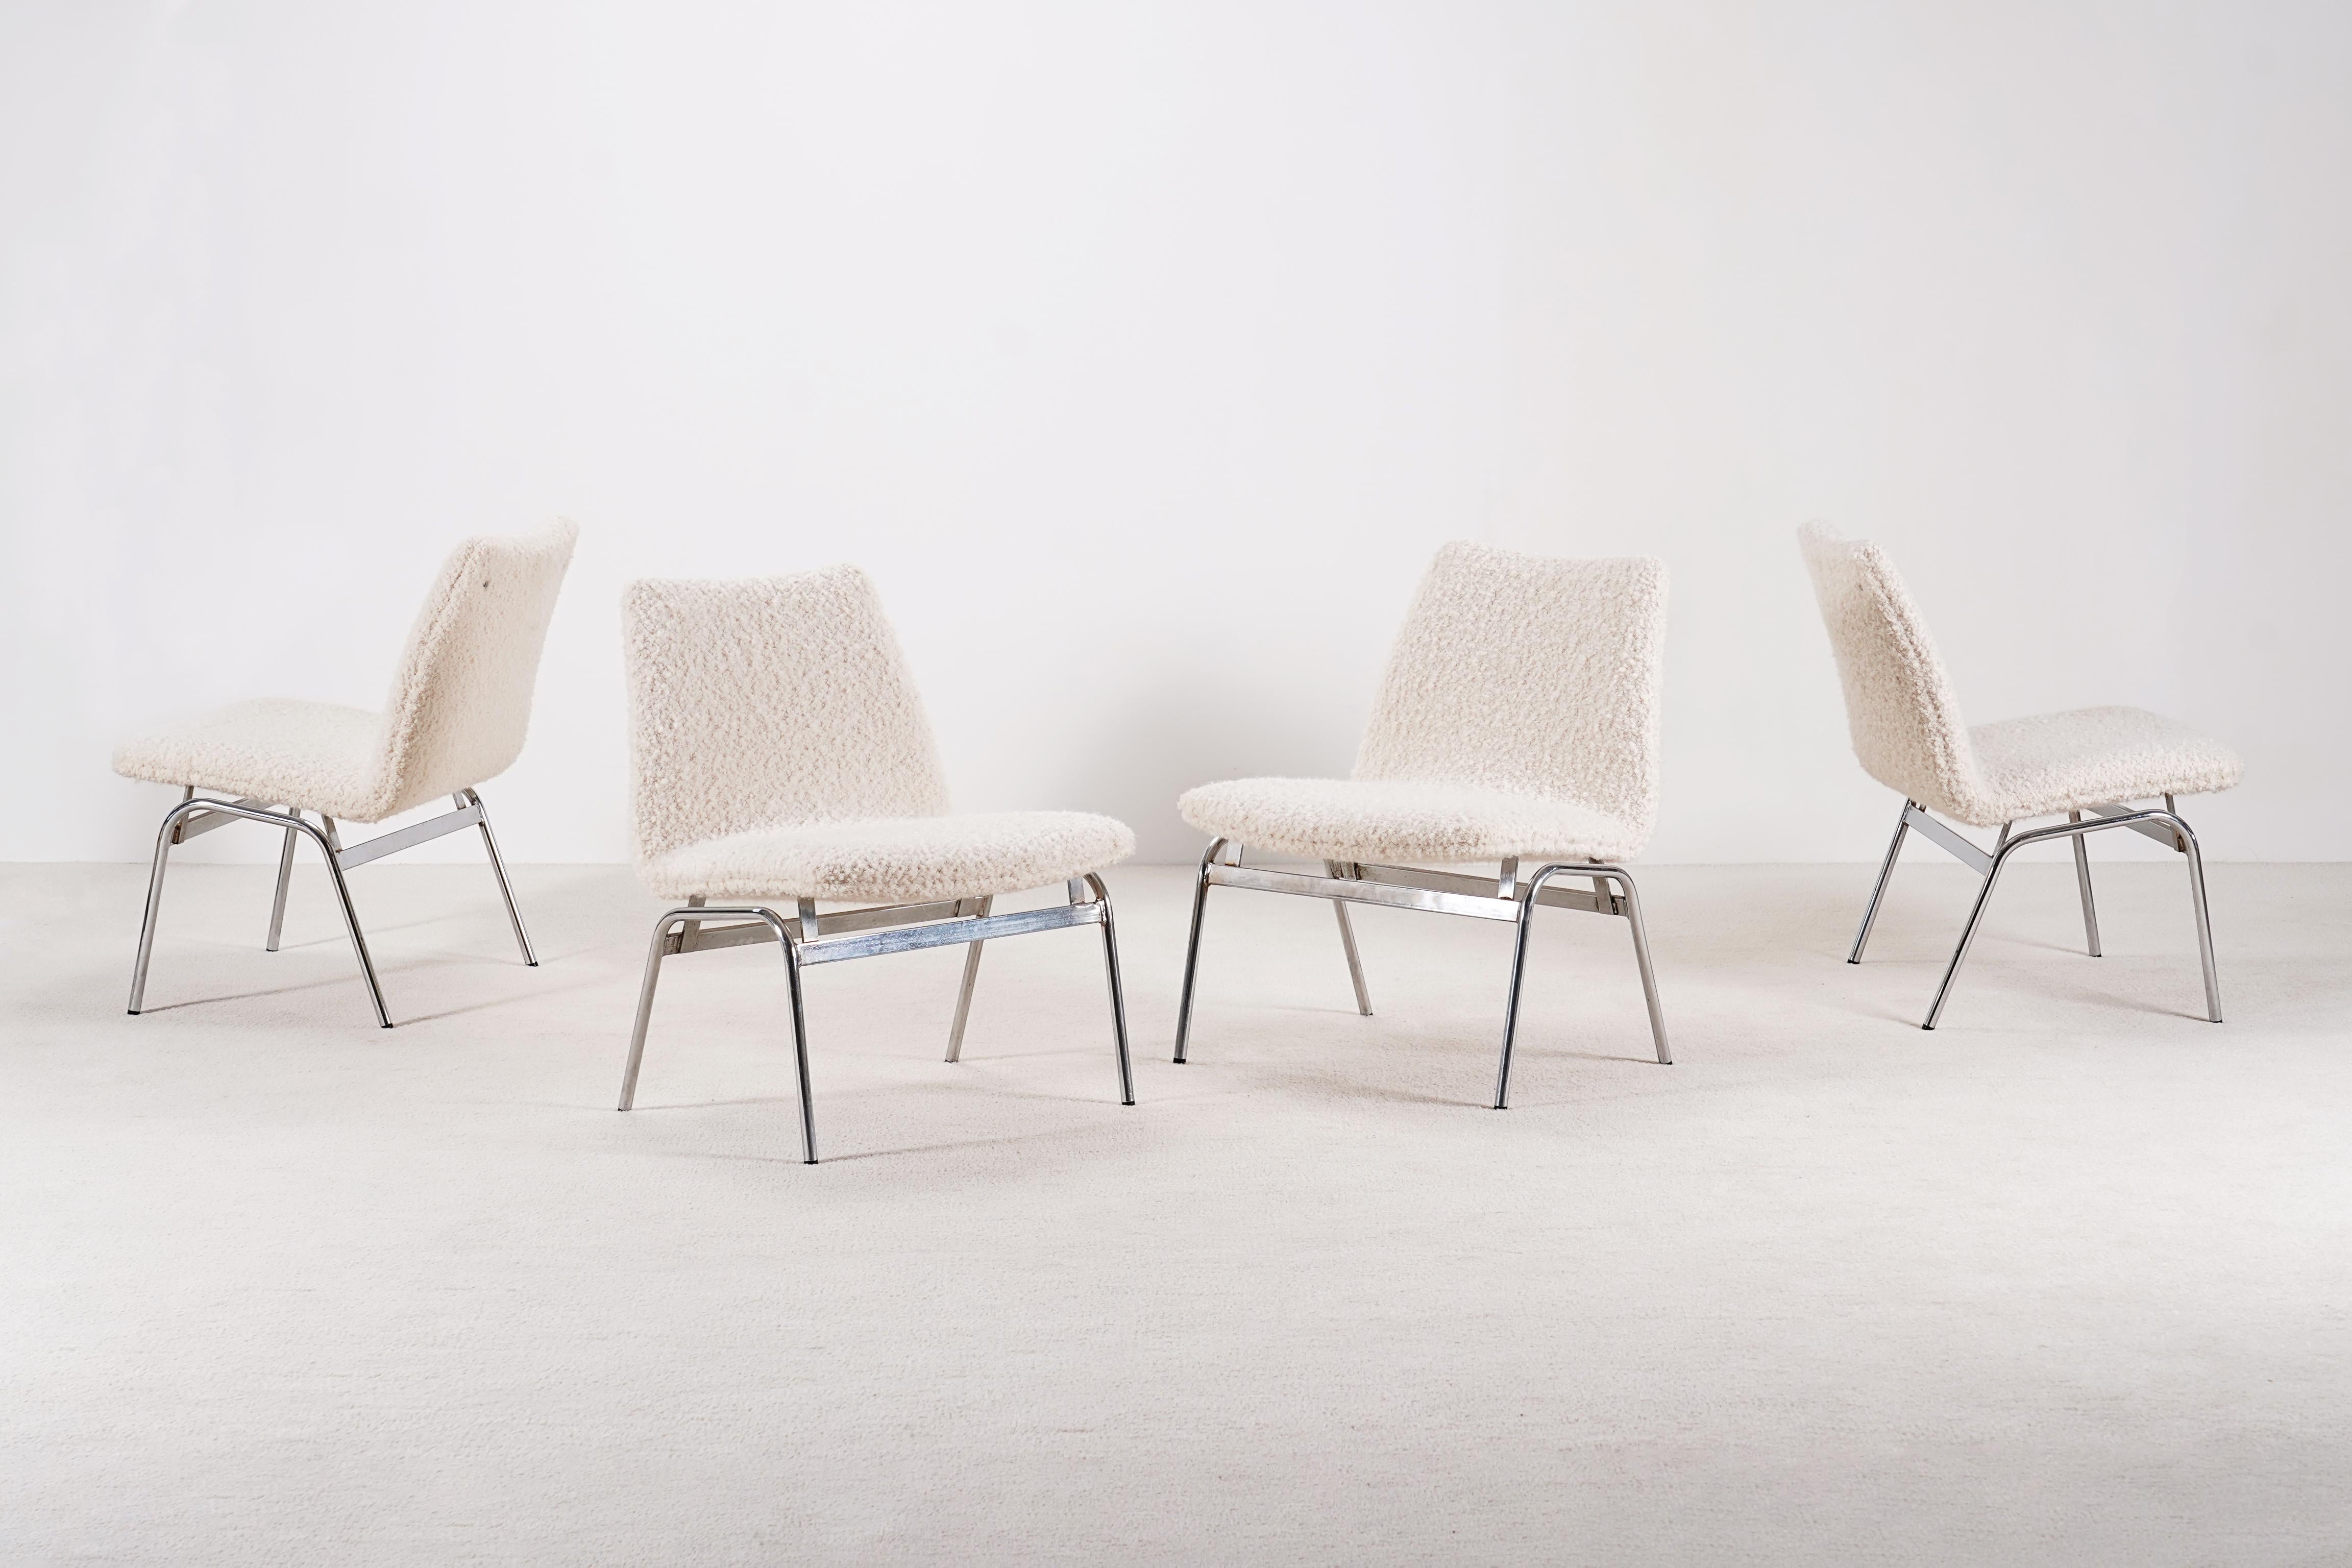 Ensemble de 4 chaises longues danoises produites par Duba dans les années 1970.

Ces fauteuils ont été fabriqués pour l'aéroport de Copenhague. 

Nous avons utilisé un tissu en laine bouclée de haute qualité de la maison française Nobilis.